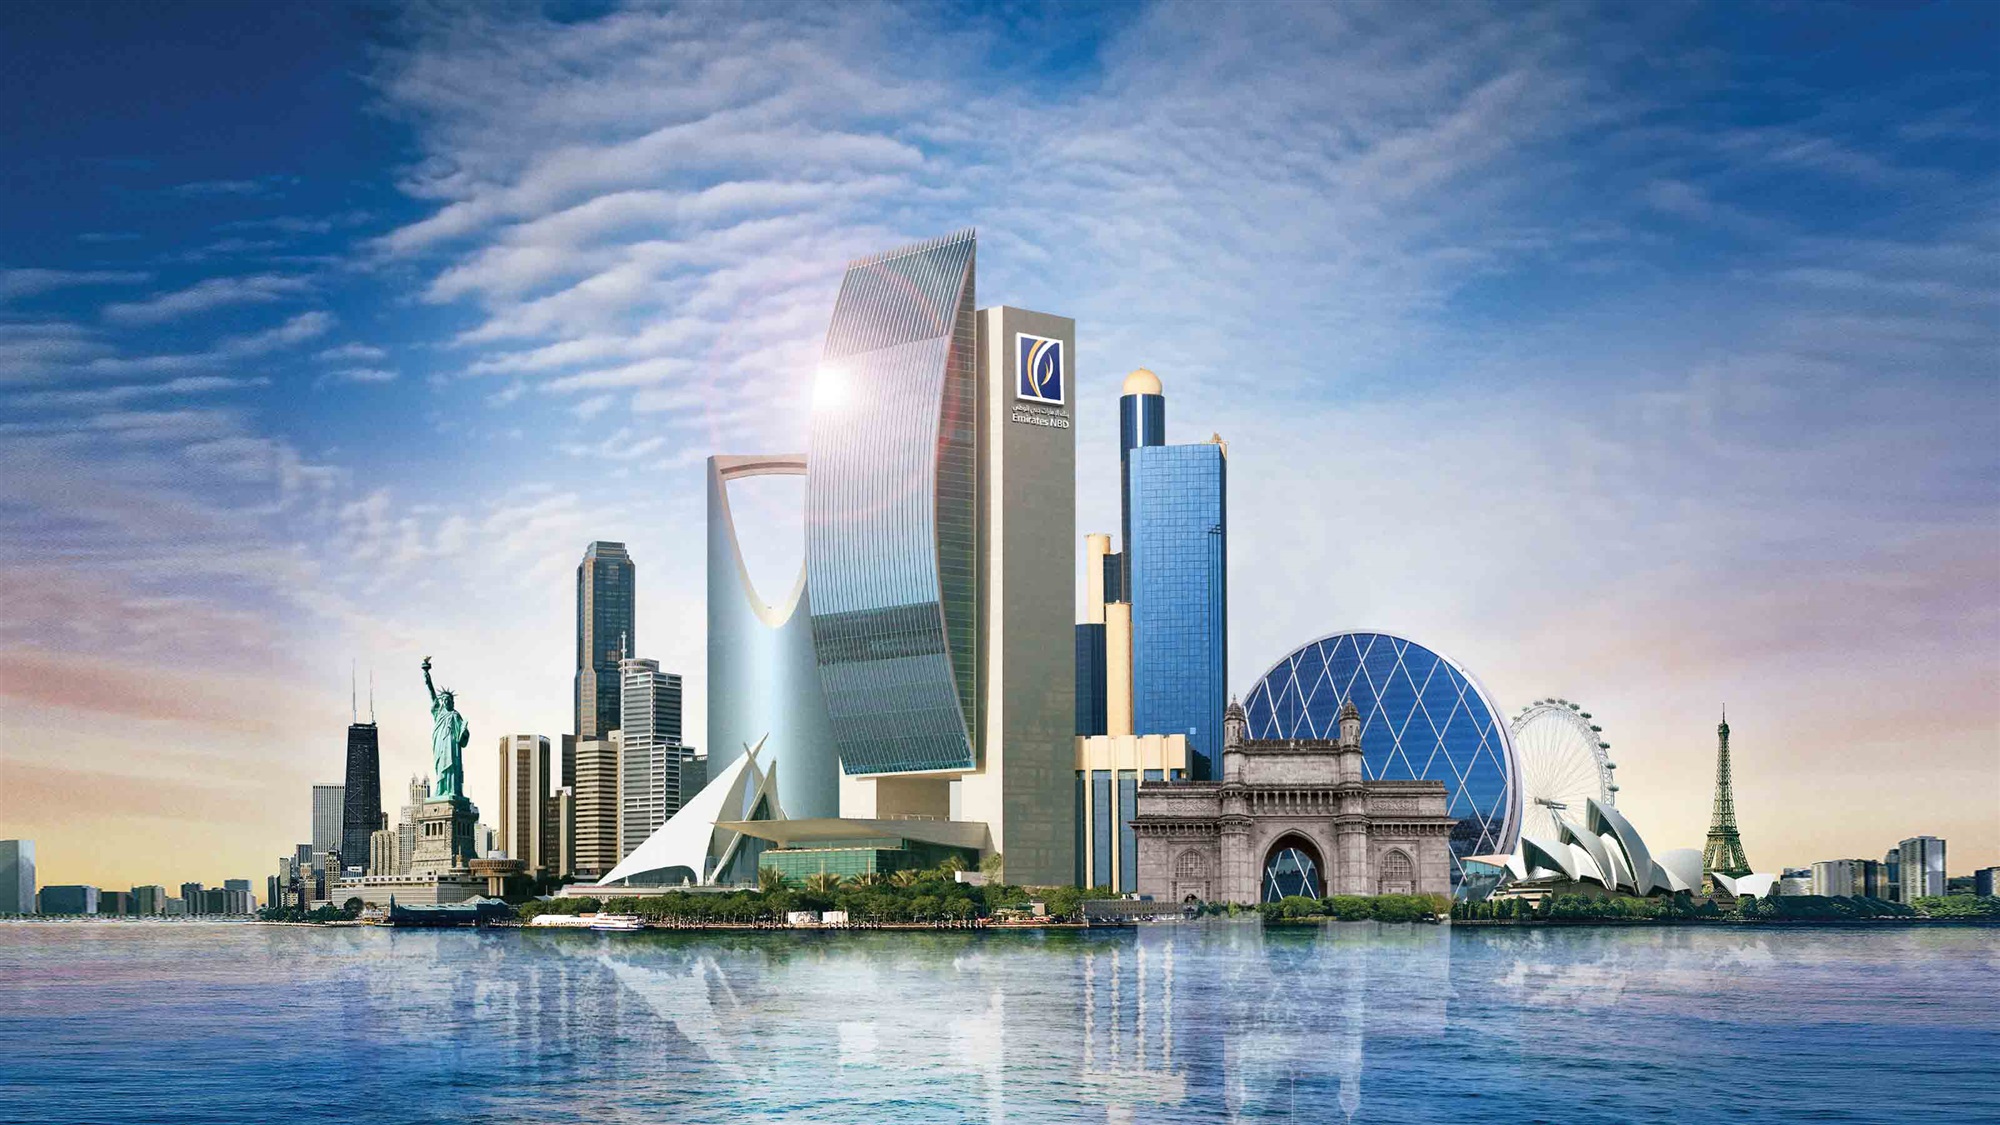 بنكي | الإمارات دبي الوطني أفضل بنك إماراتي لعام 2020 من ...